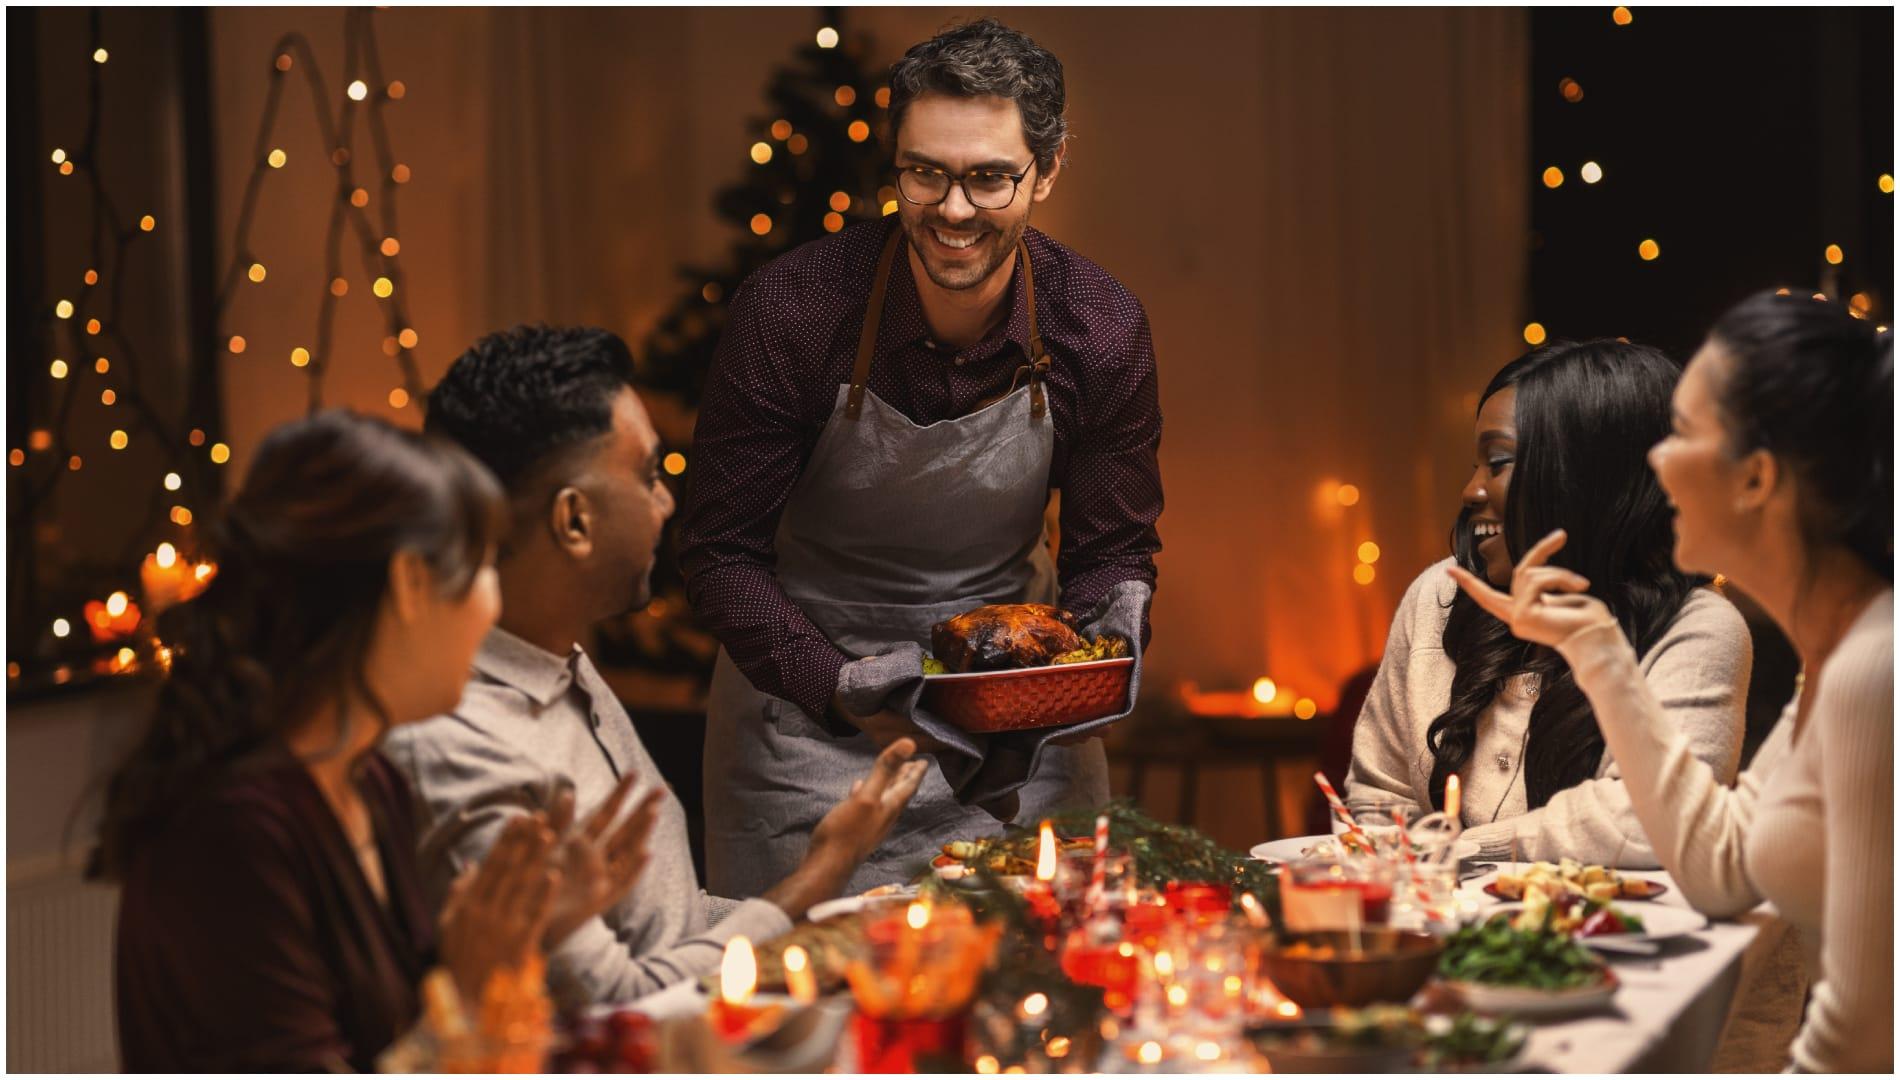 Una cena navideña (Shutterstock)